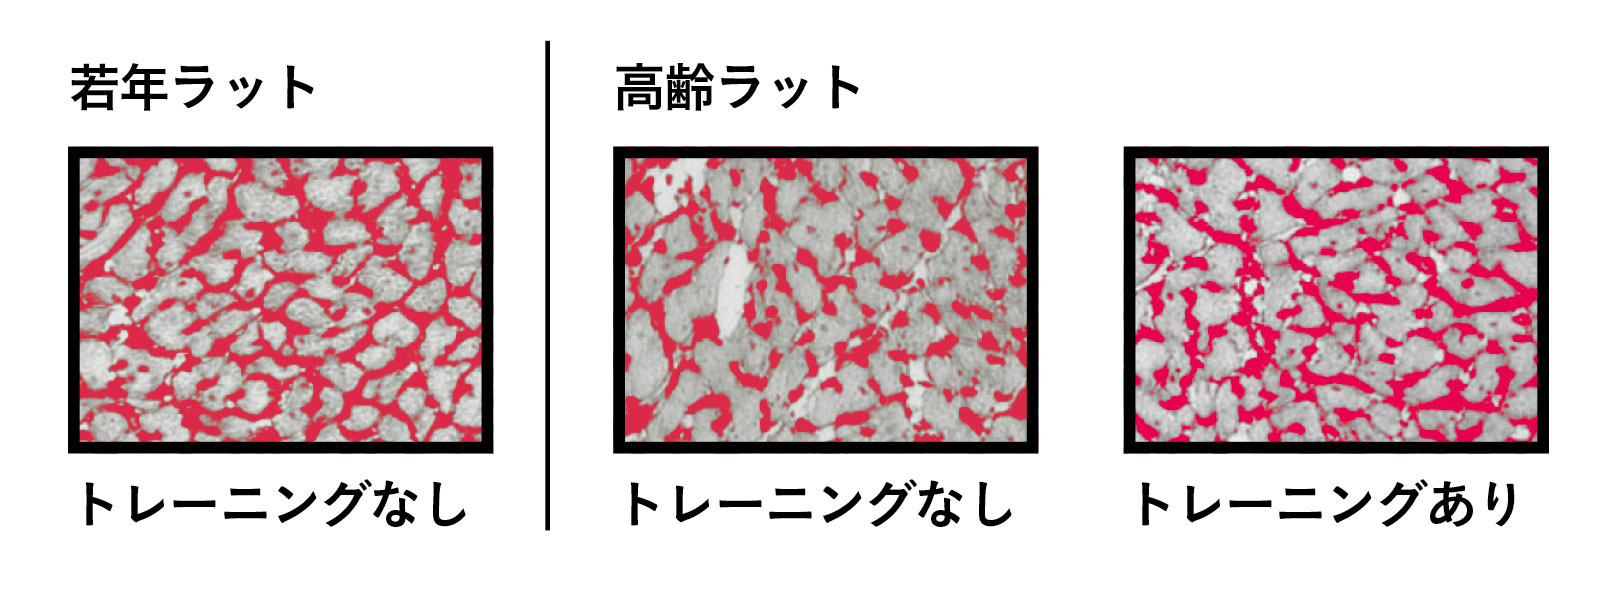 血管 血流 対処法 トレーニングと⼼臓の⽑細⾎管